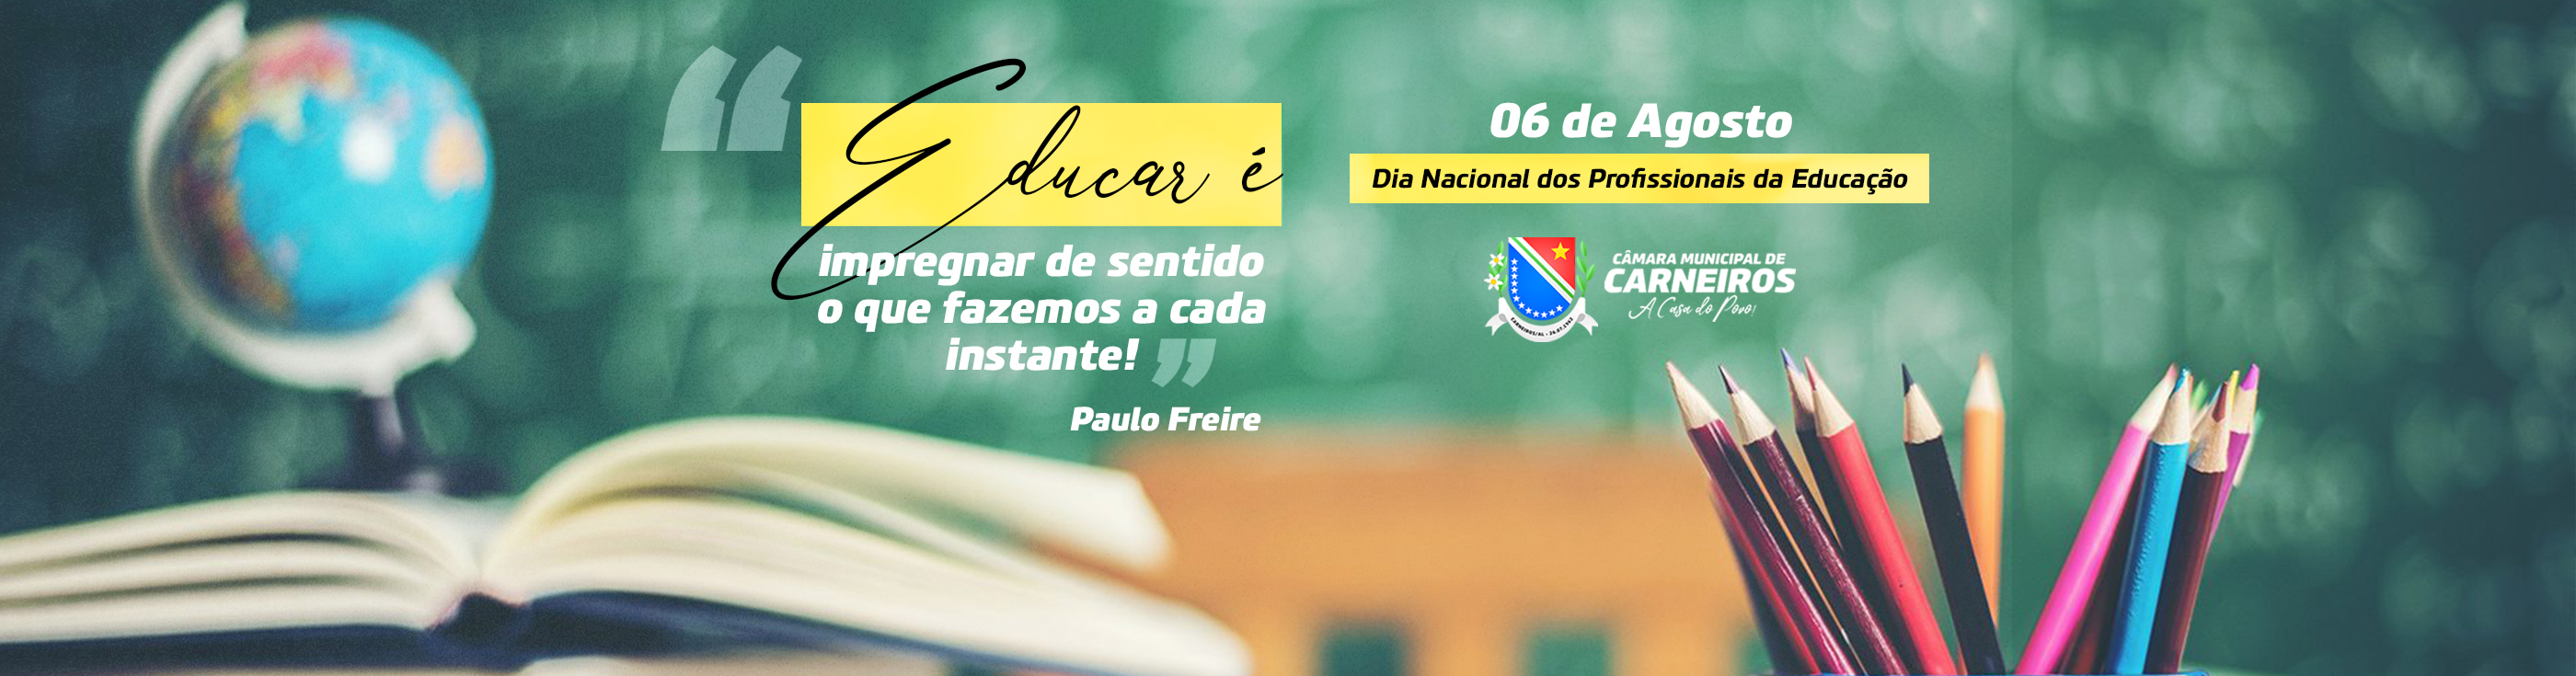 Dia nacional dos profissionais da educação 06 de agosto Dia Nacional Dos Profissionais Da Educacao Camara De Carneiros Al